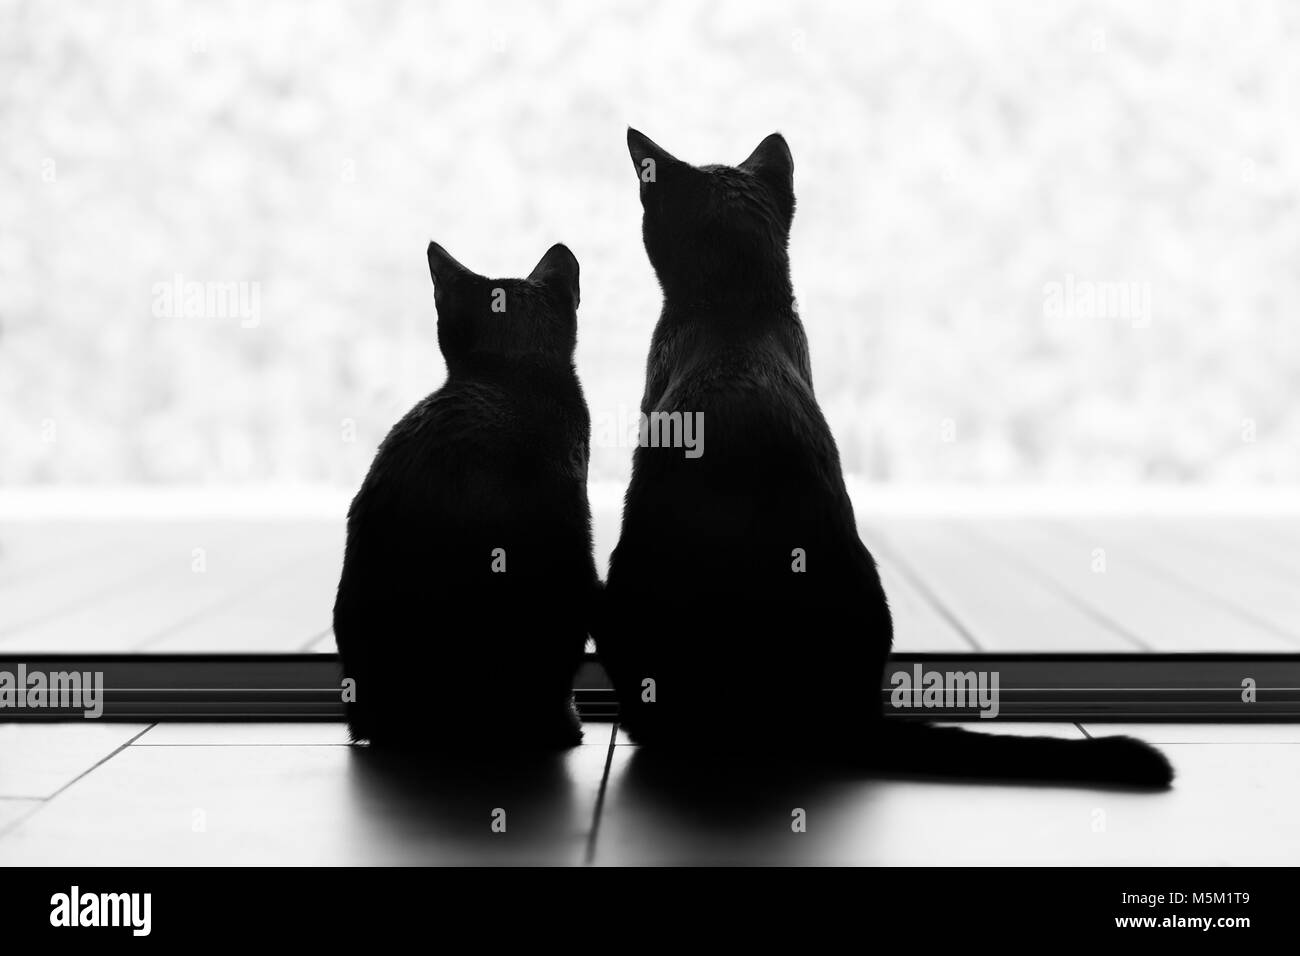 Zwei schwarze Katze shilouettes in einer verschneiten Landschaft suchen. Stockfoto